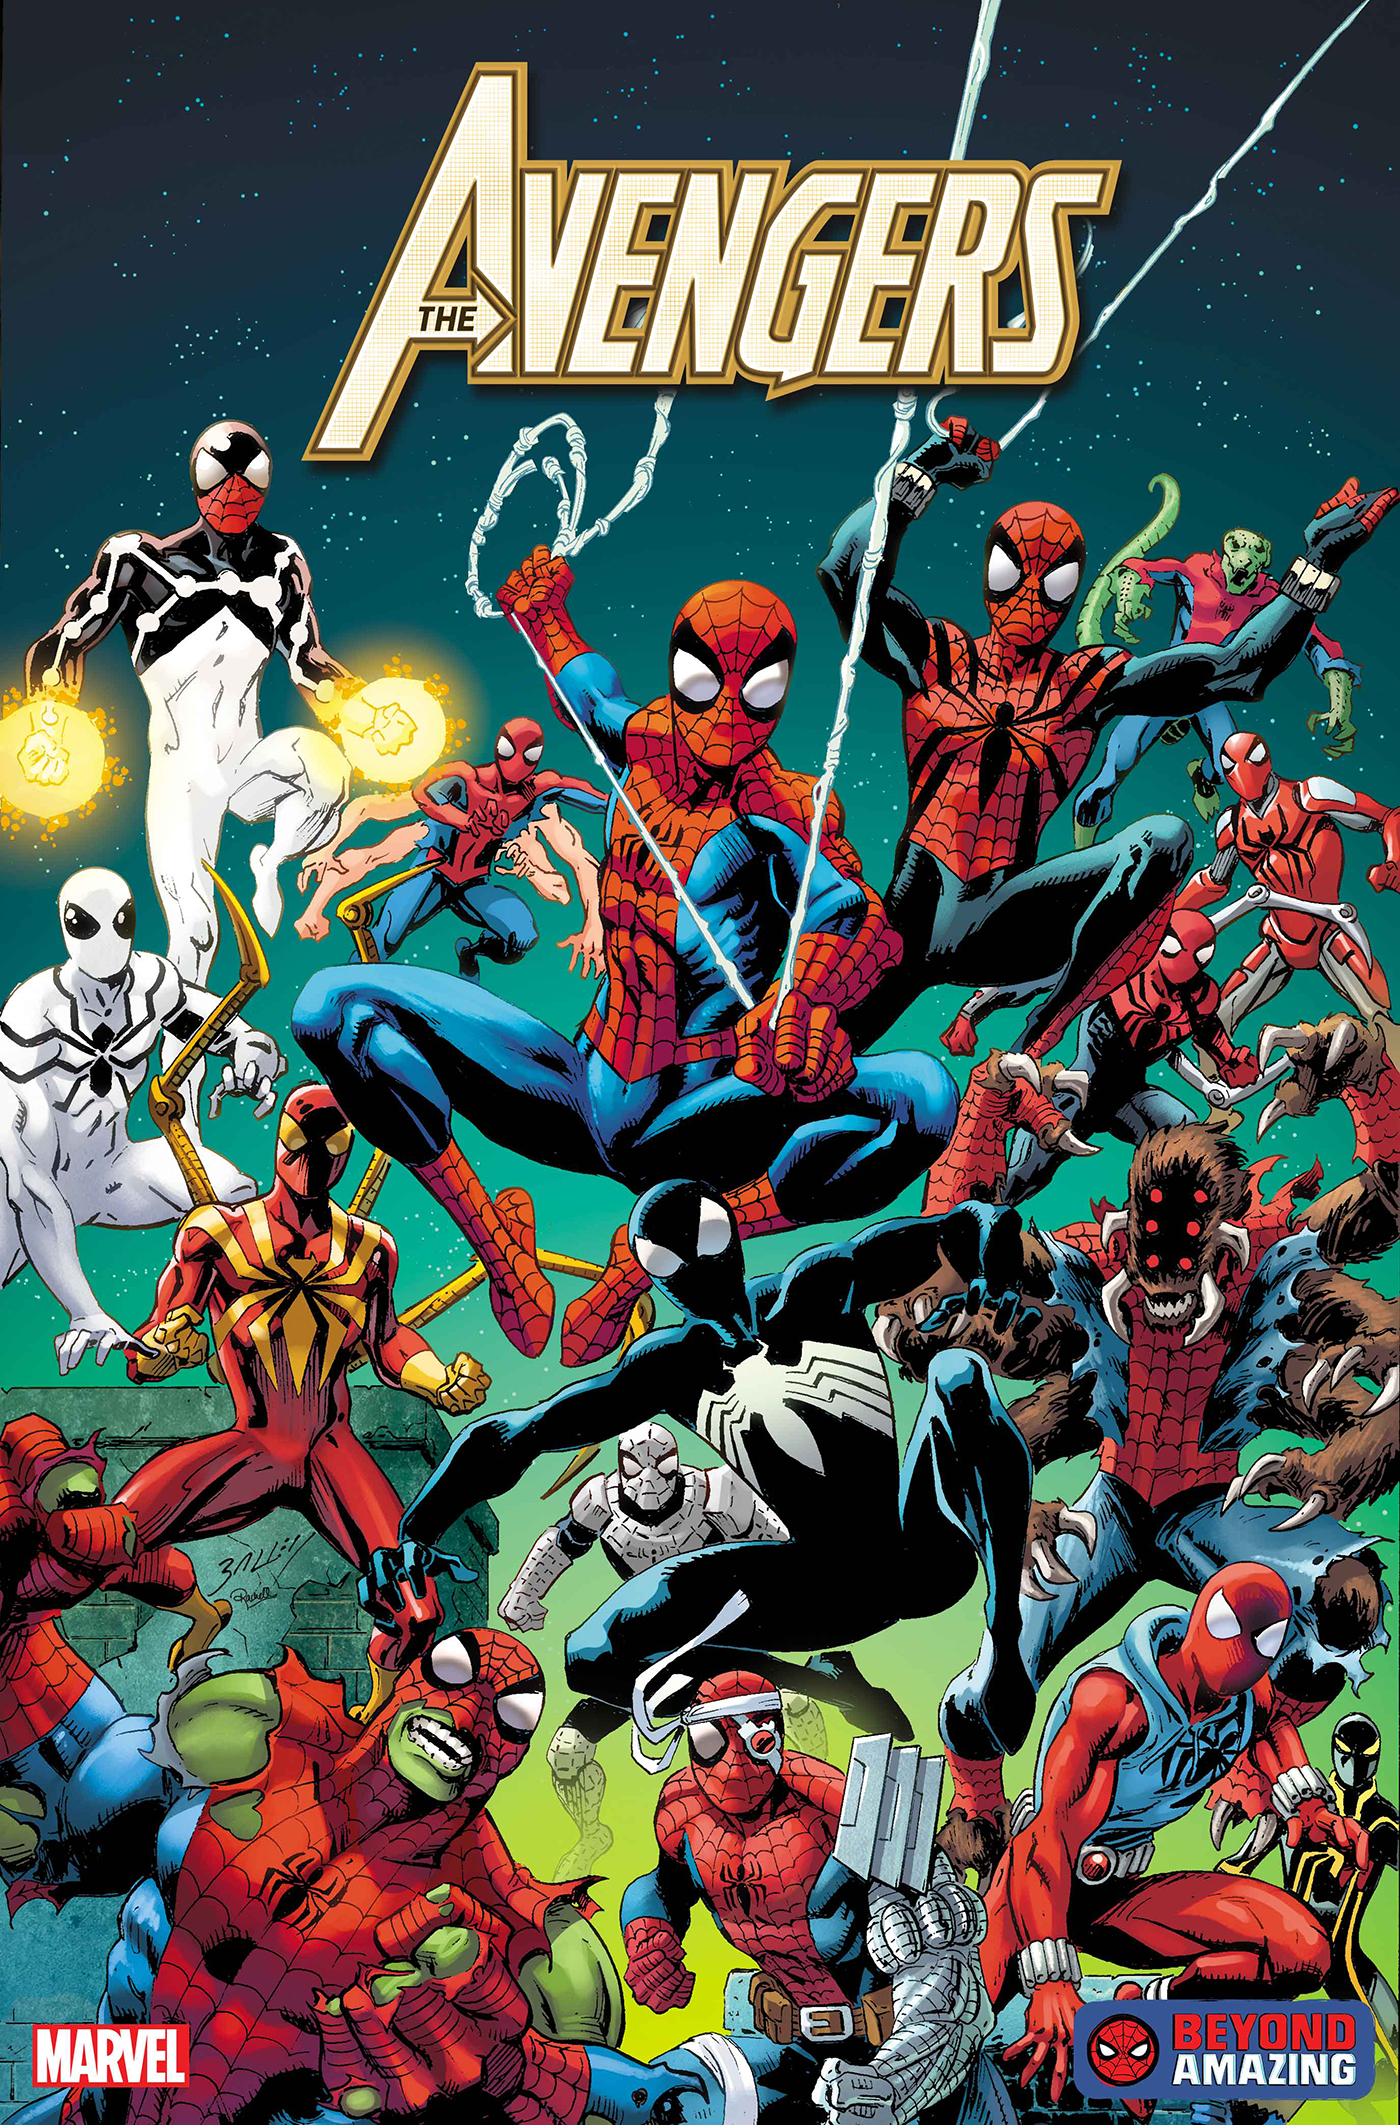 Amazing Spider-Man #54.LR CGC 9.8